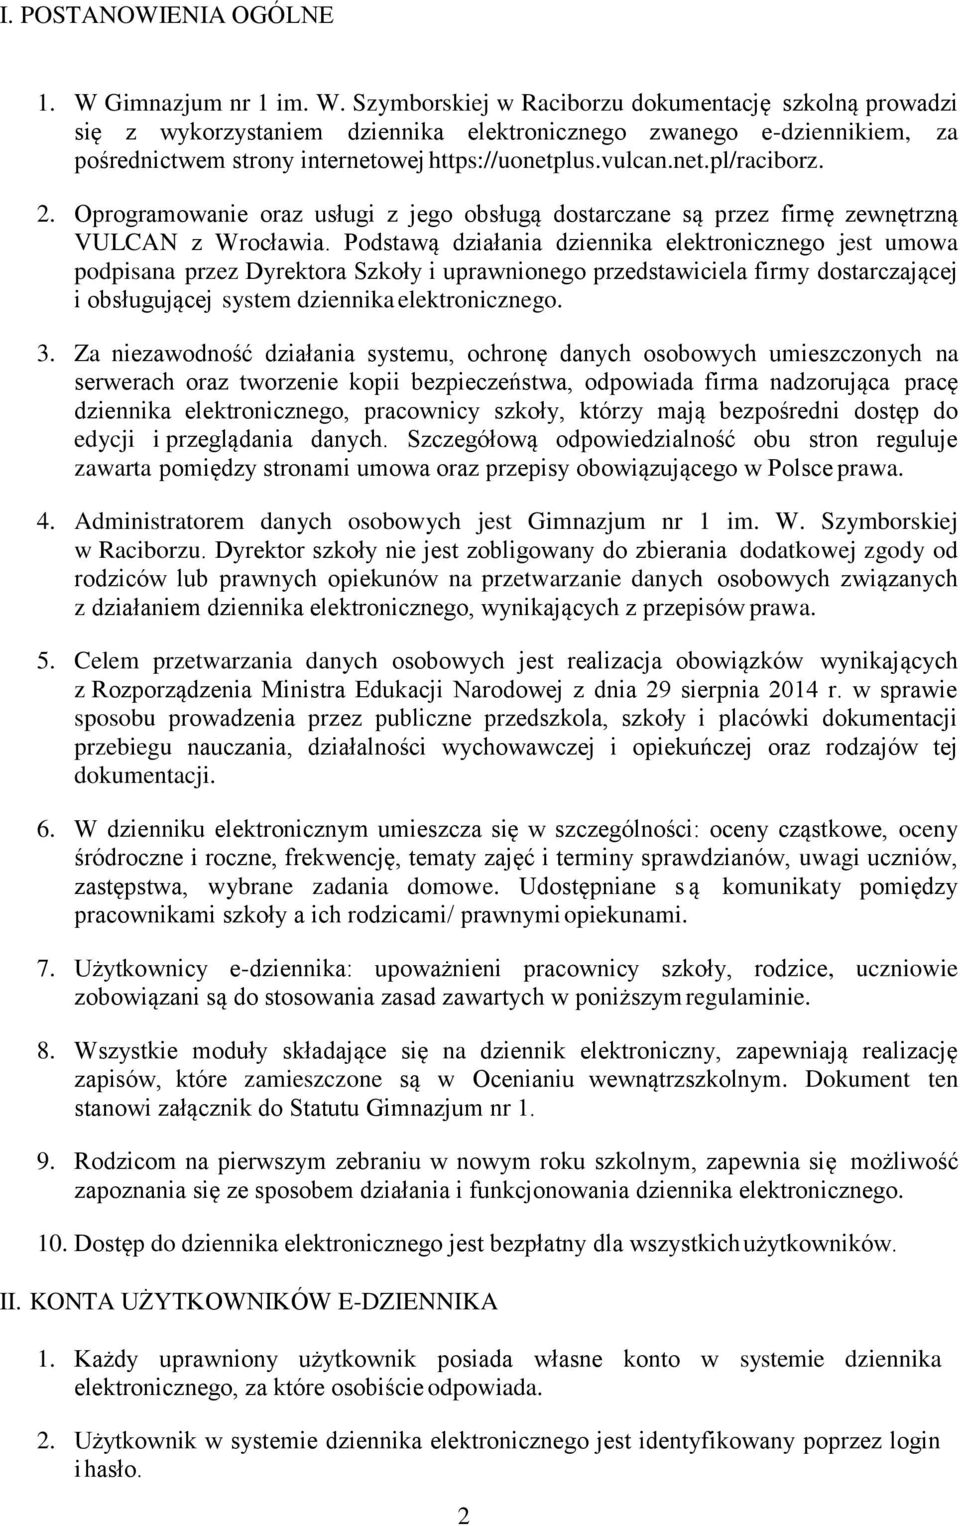 Szymborskiej w Raciborzu dokumentację szkolną prowadzi się z wykorzystaniem dziennika elektronicznego zwanego e-dziennikiem, za pośrednictwem strony internetowej https://uonetplus.vulcan.net.pl/raciborz.